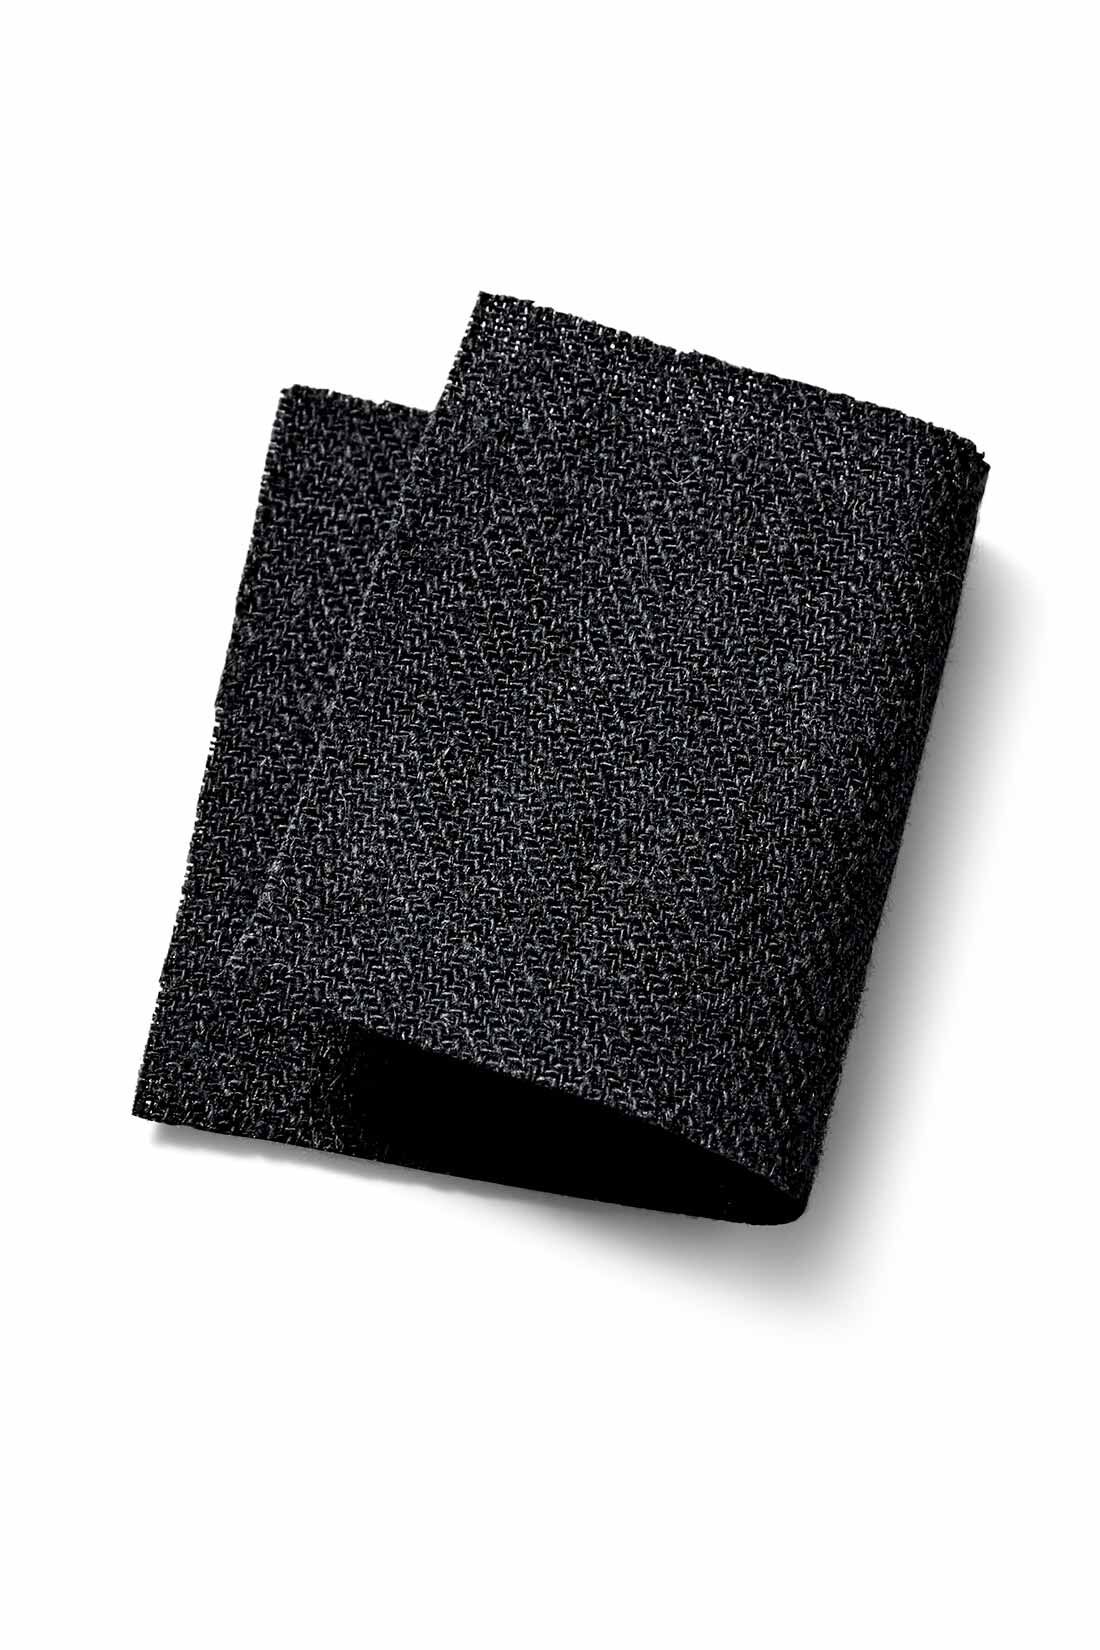 MEDE19F|MEDE19F　生地から作りこんだ ミリタリーカーゴパンツ〈ブラック〉|ふしのある綿麻混紡糸をやや甘めに織ることで、ヘリンボーン柄の凹凸が際立ち、黒一色でも豊かな表情に。